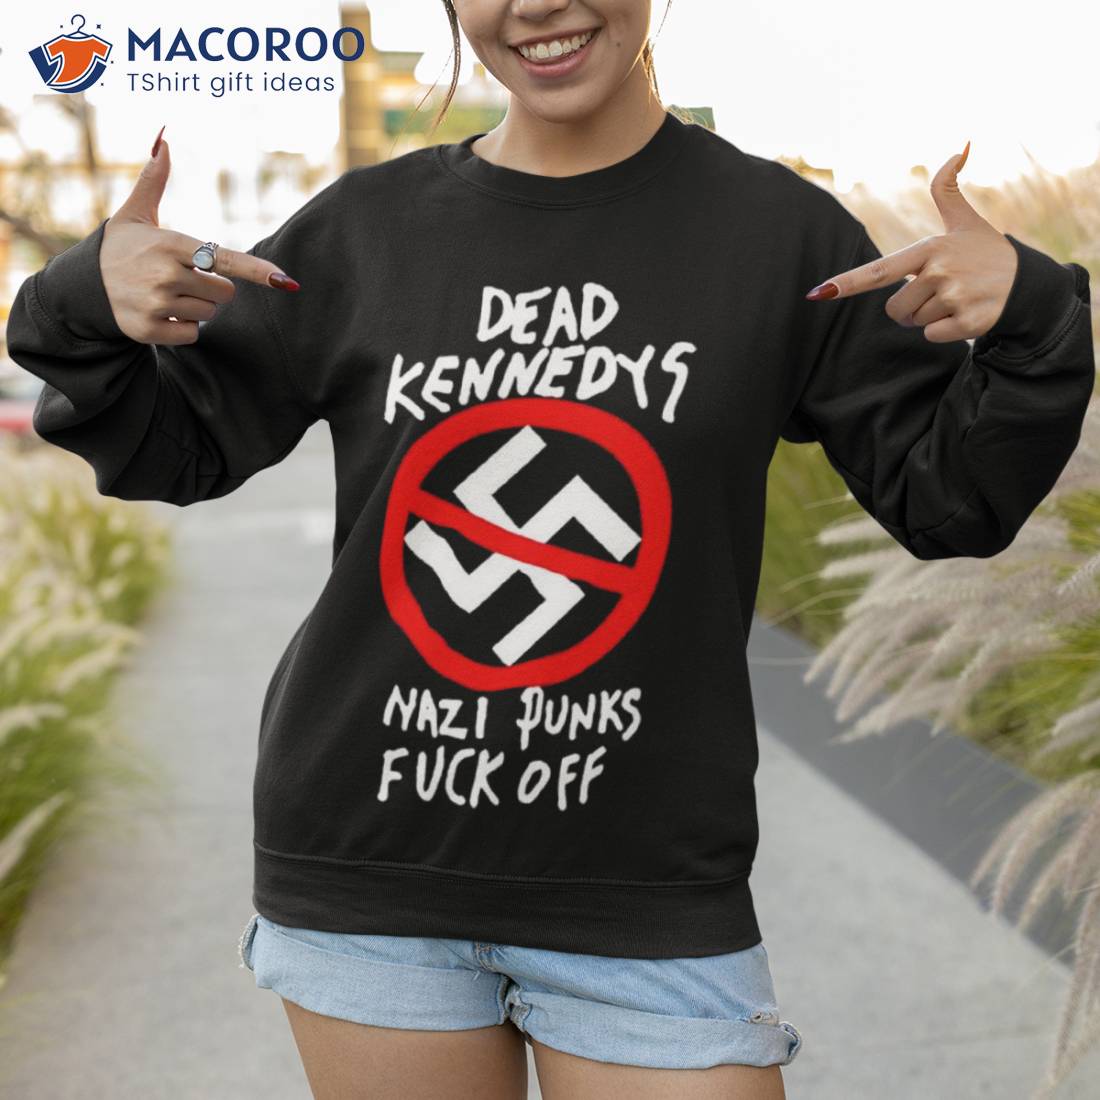 Nazi Punks Fuck Off Shirt